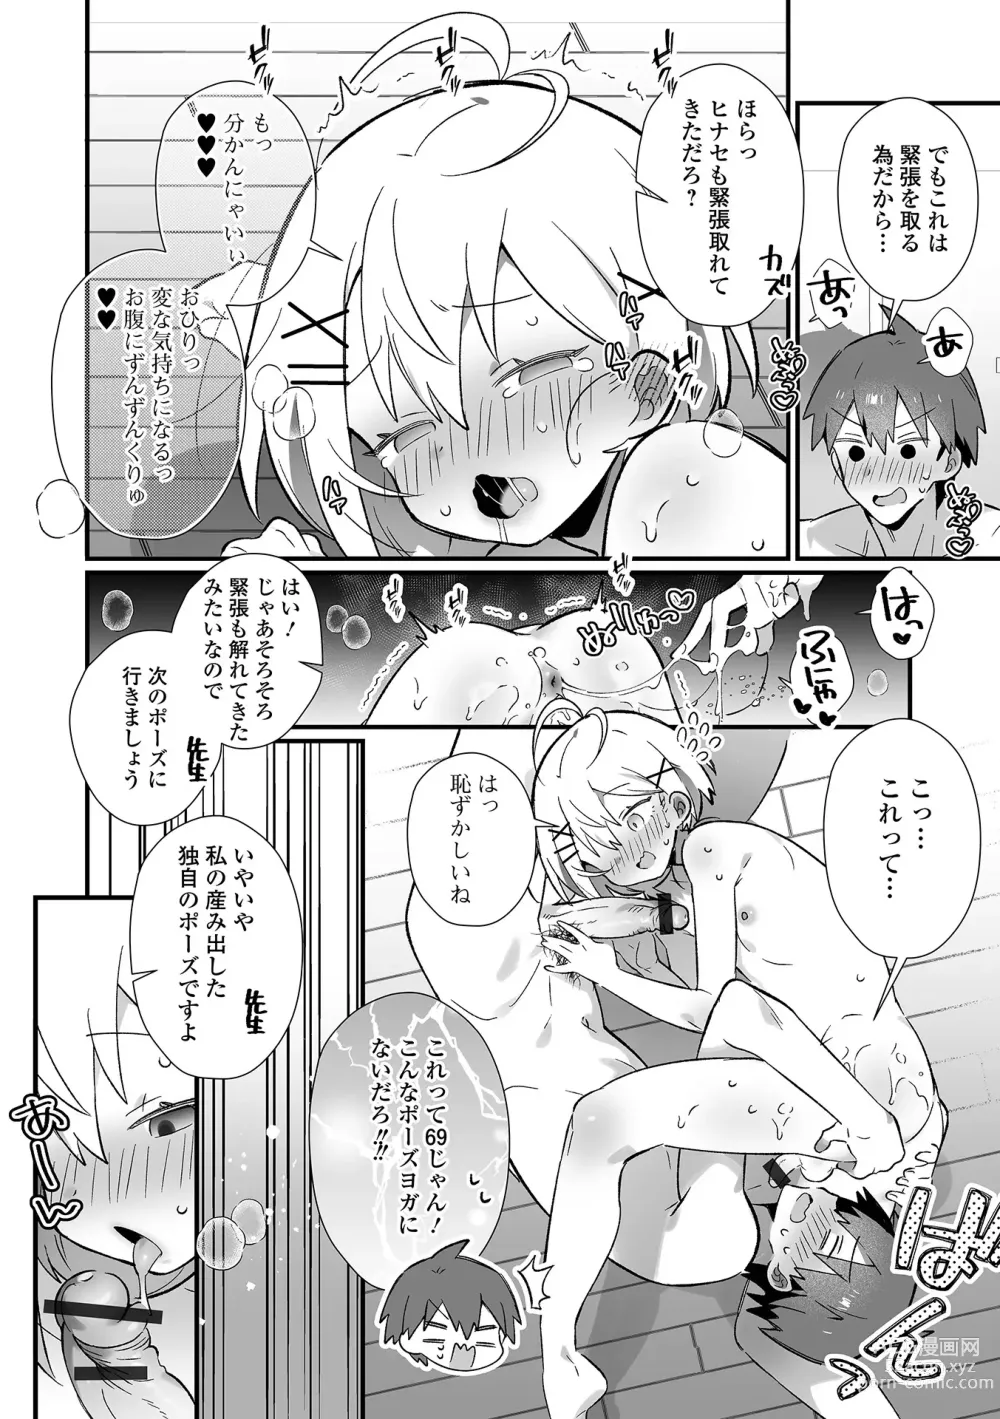 Page 26 of manga Gekkan Web Otoko no Ko-llection! S Vol. 93